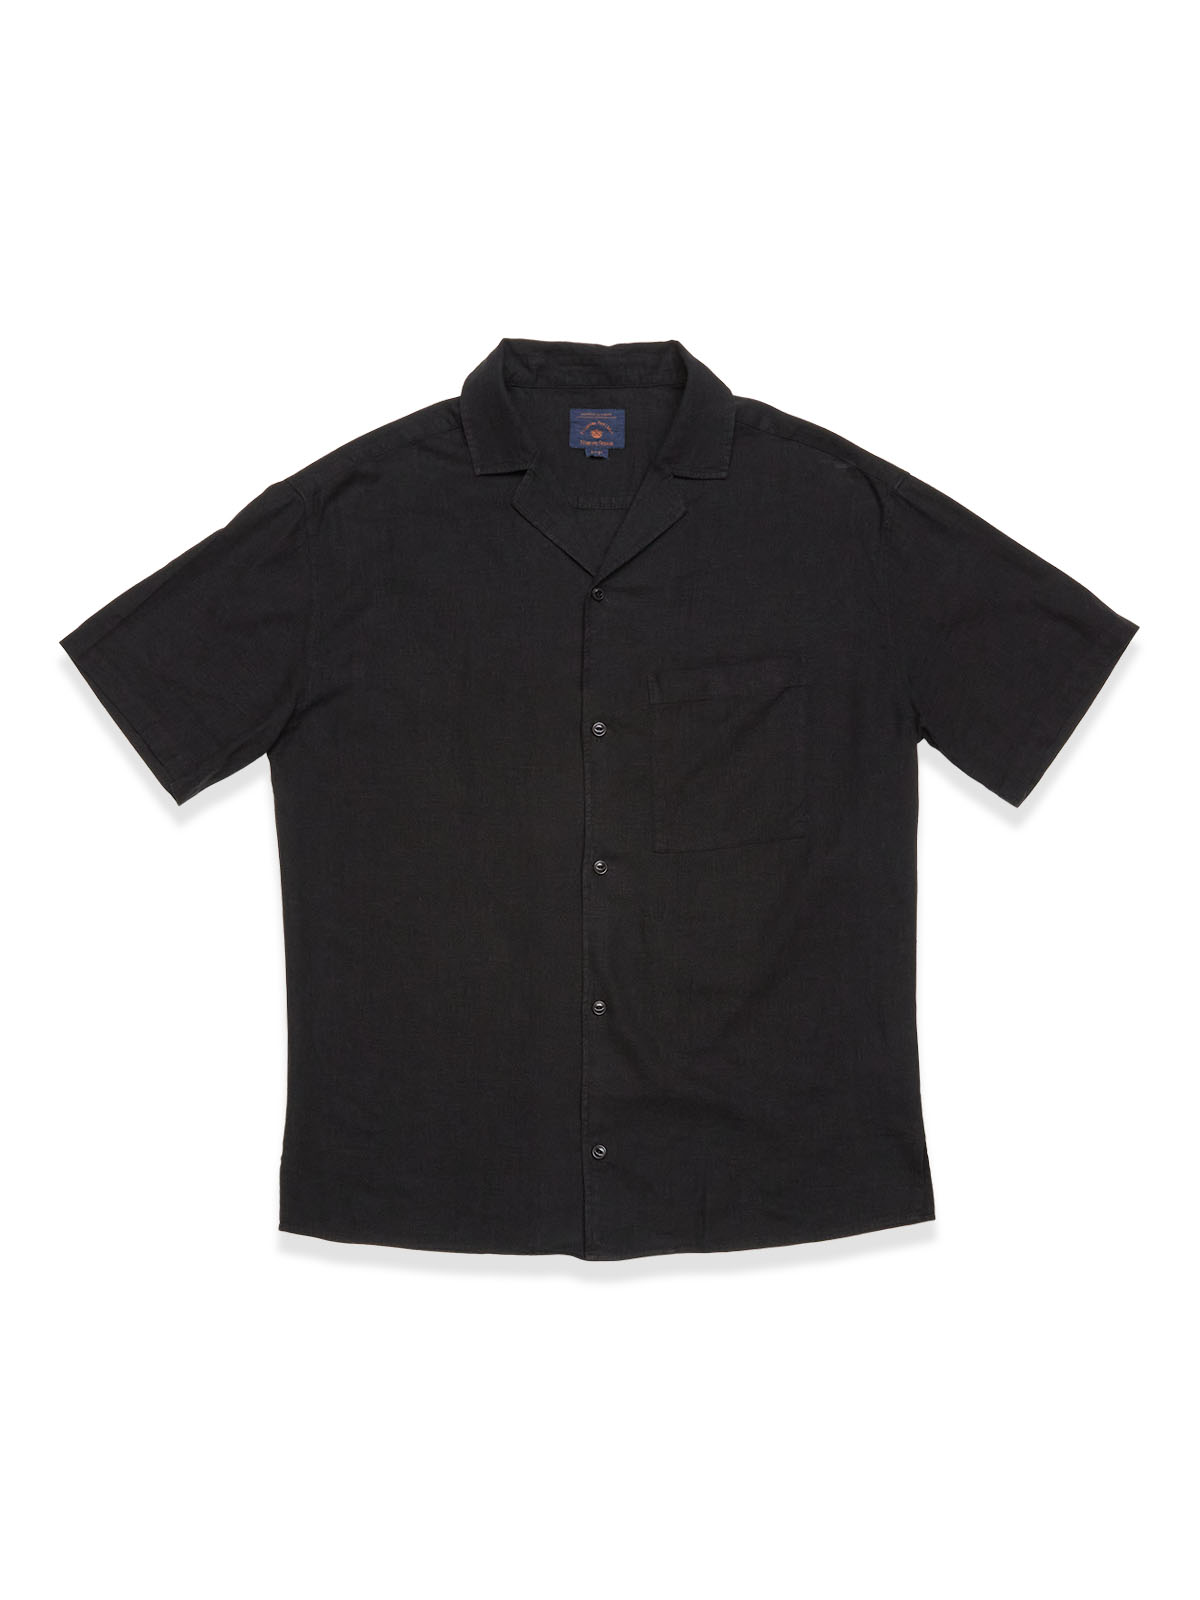 Blue de genes | Lapel collar shirt with chest pocket